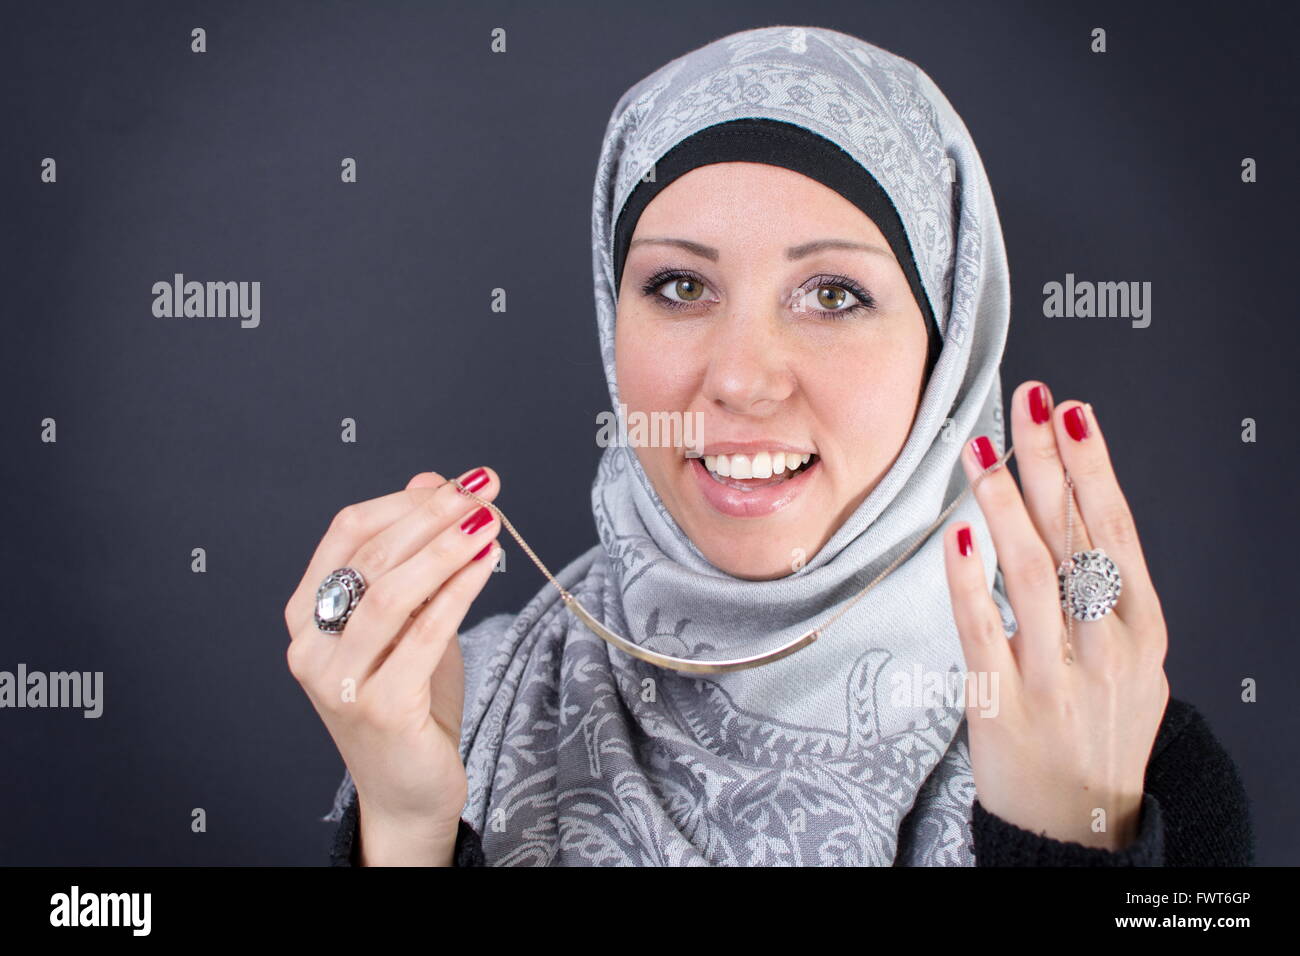 Jewelry muslim immagini e fotografie stock ad alta risoluzione - Alamy